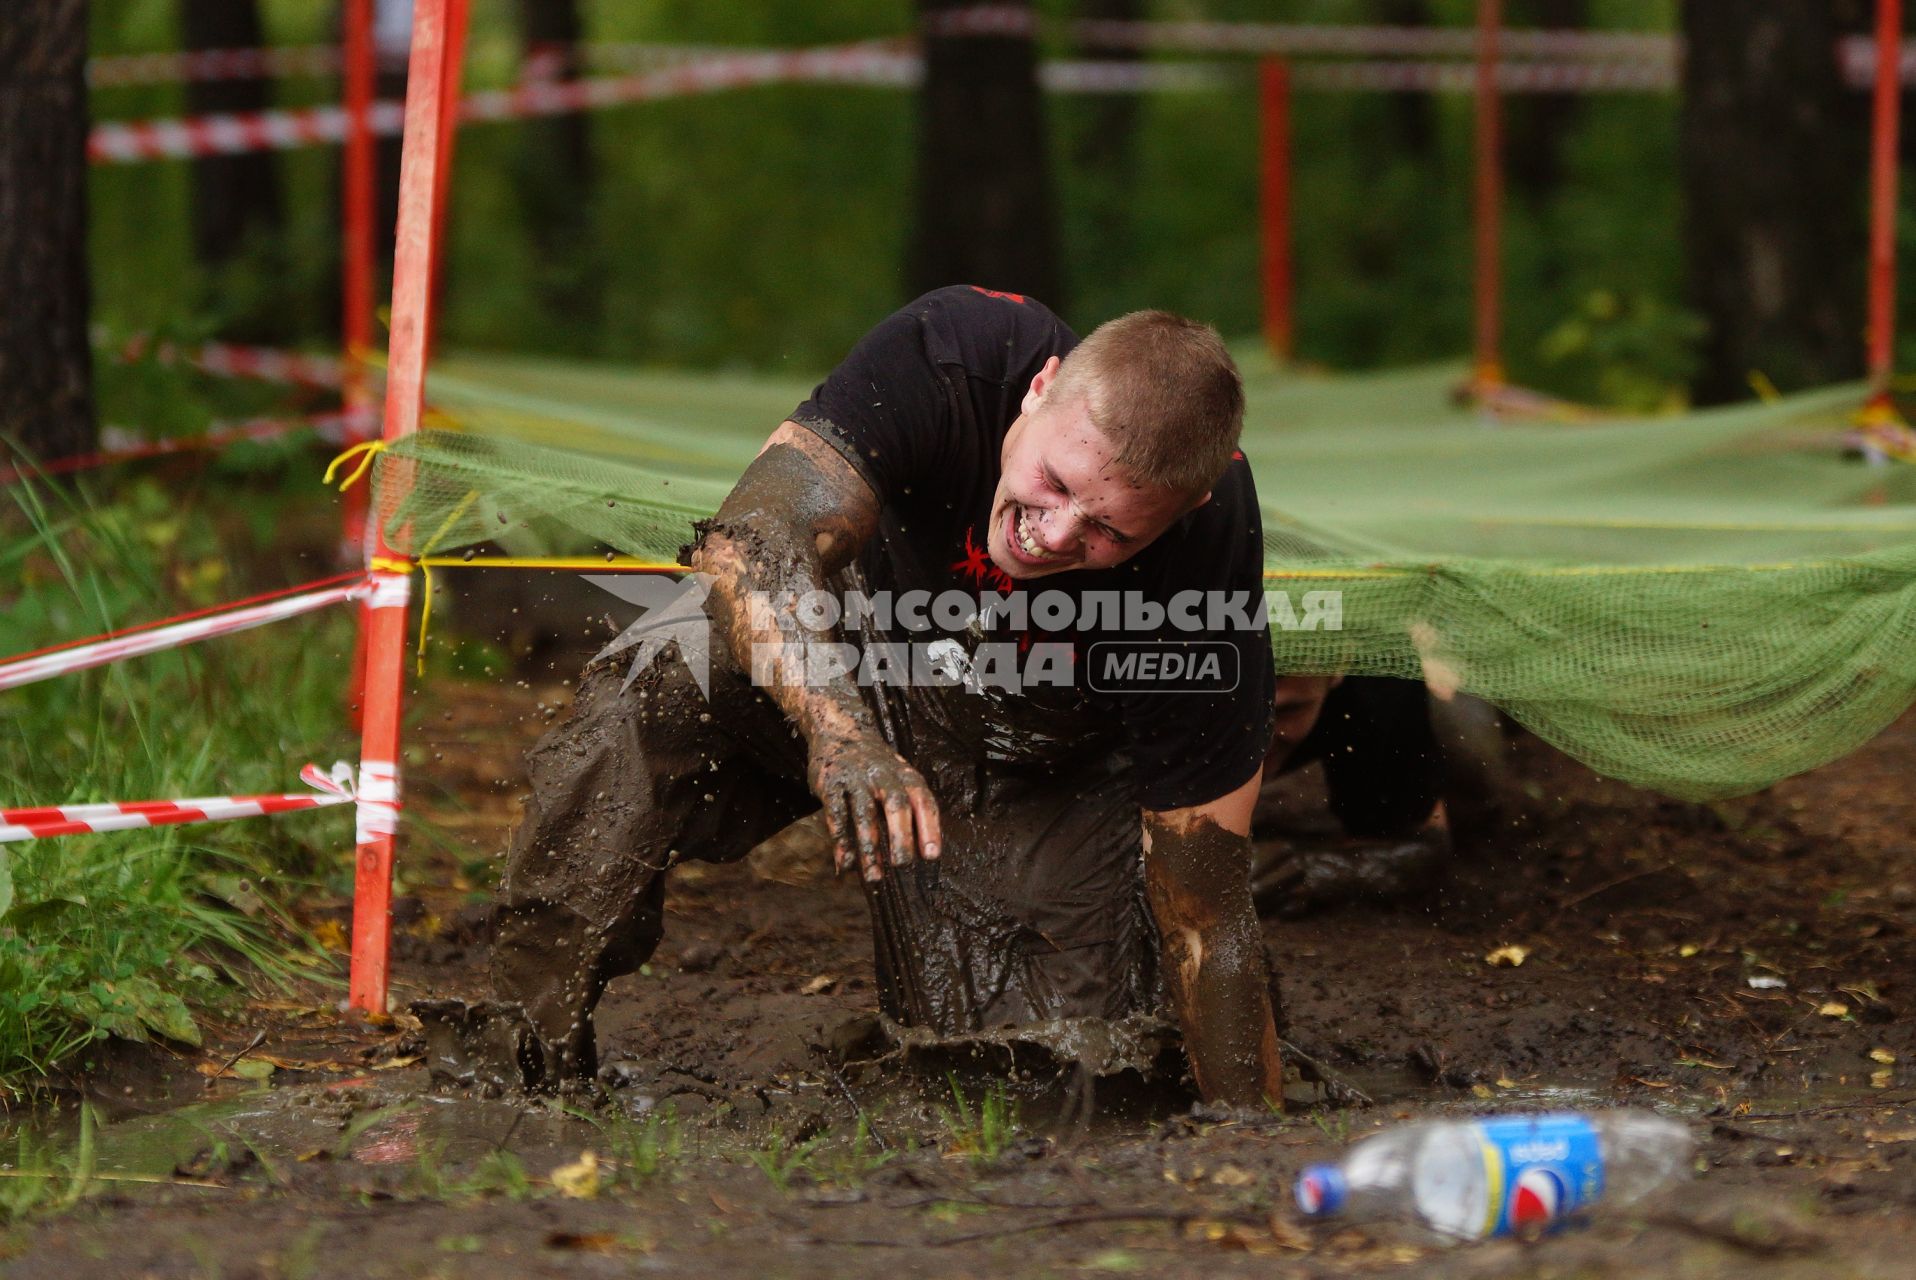 Участник грязных гонок Ural Dirty Race 2014 под Екатеринбургом  ползет по грязи